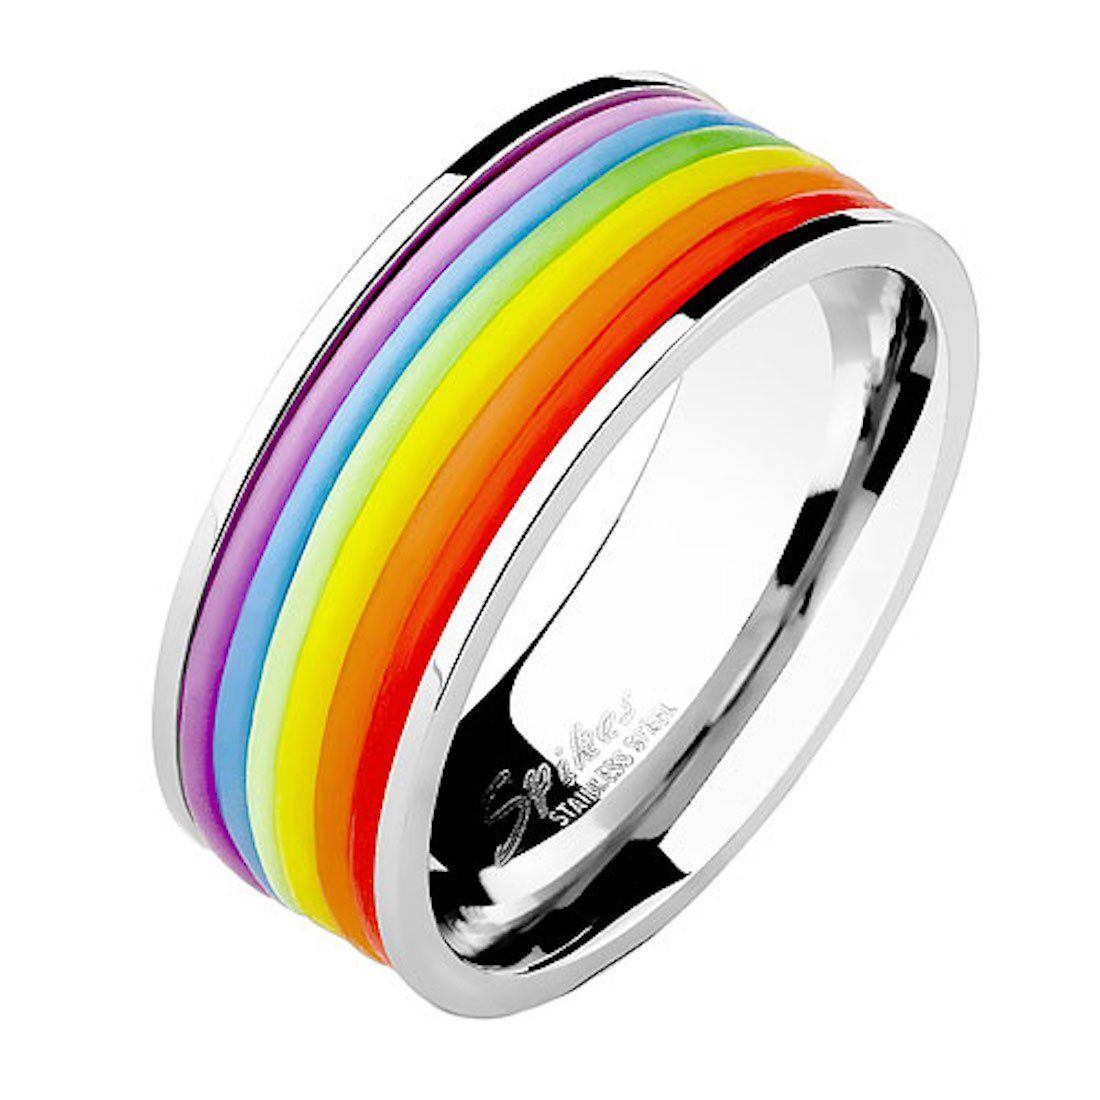 Taffstyle Fingerring Herren Rainbow, Herrenring Silber Biker Band Partnerring Ring Silikon Bandring Edelstahl Streifen Ring Streifen poliert